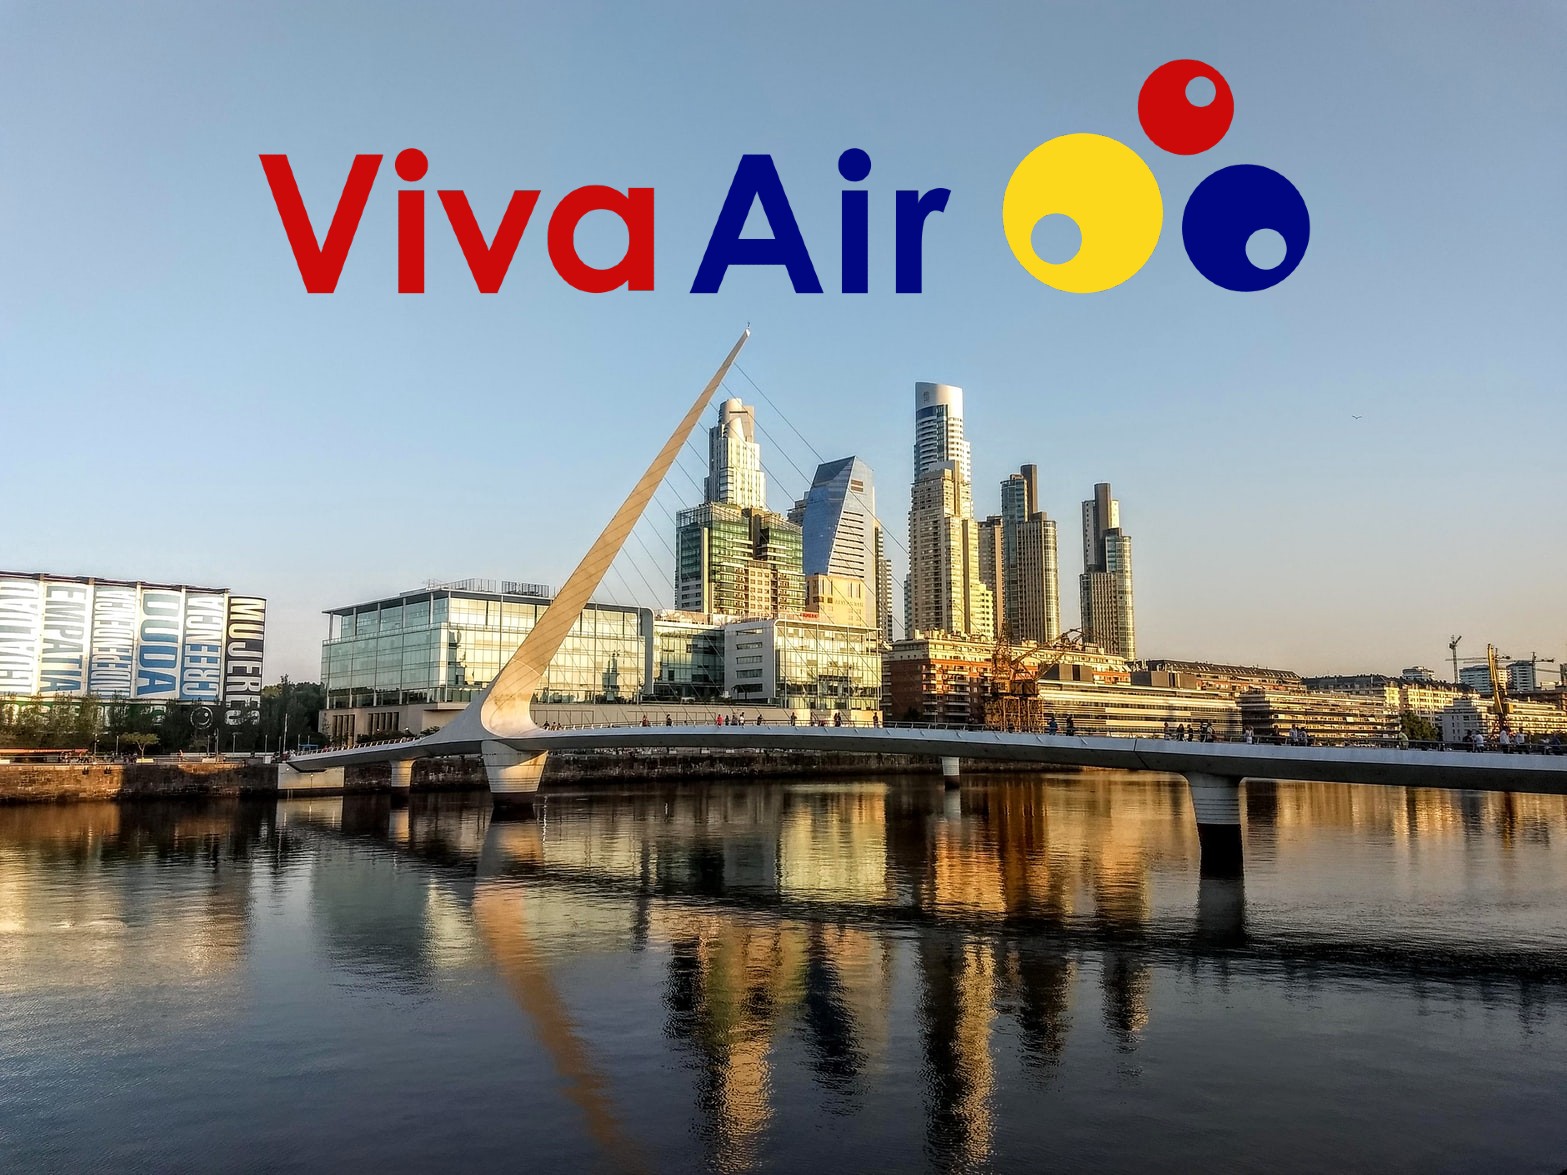 Puente de la Mujer en Buenos Aires y el logo de Viva Air